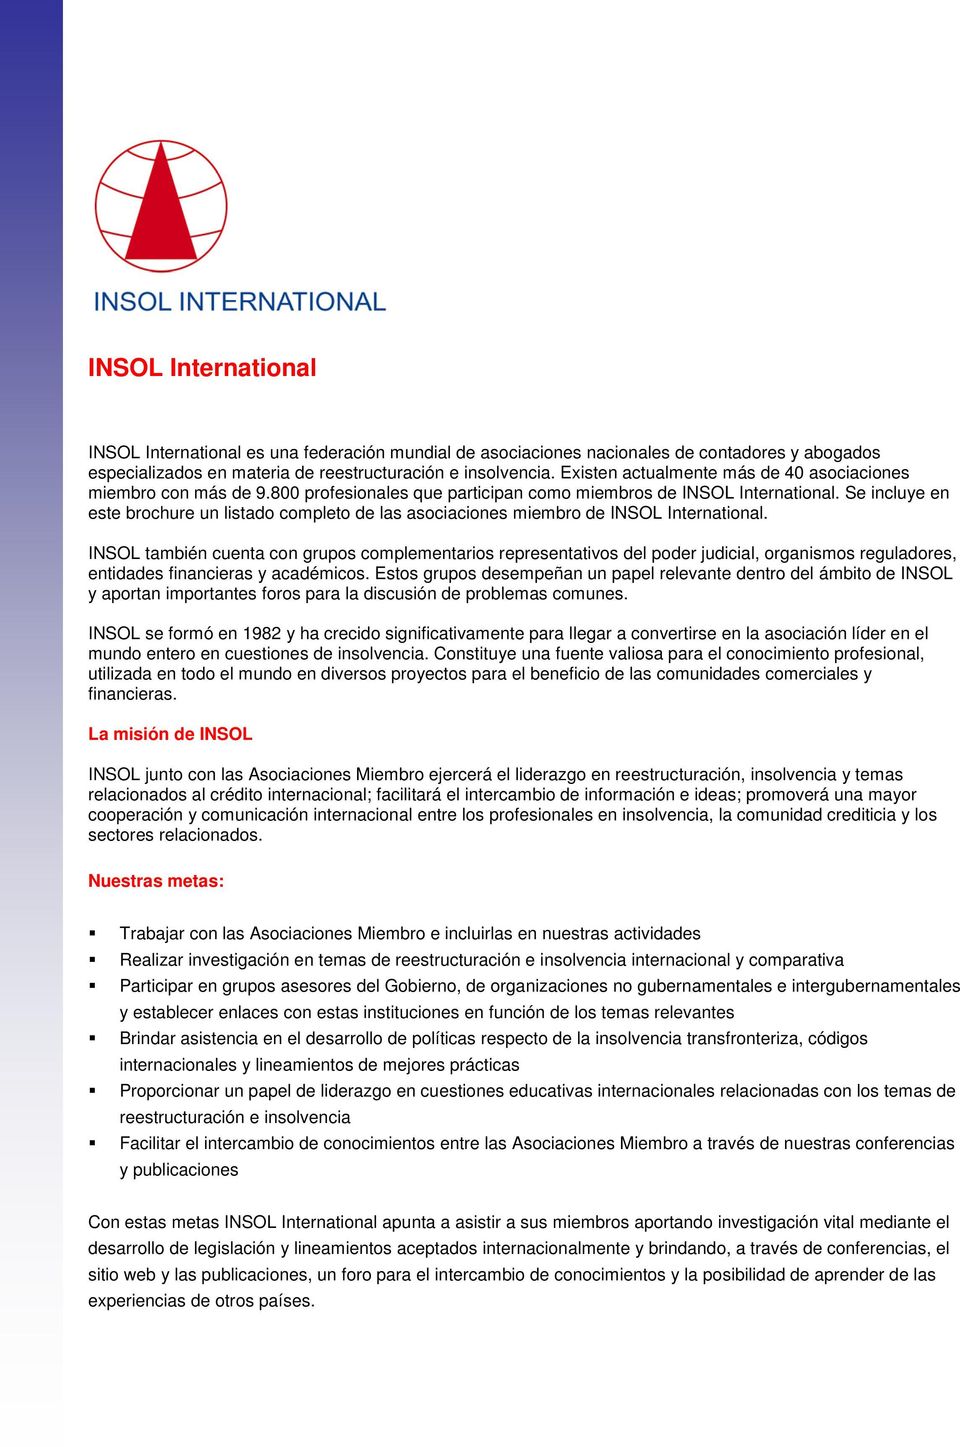 Se incluye en este brochure un listado completo de las asociaciones miembro de INSOL International.